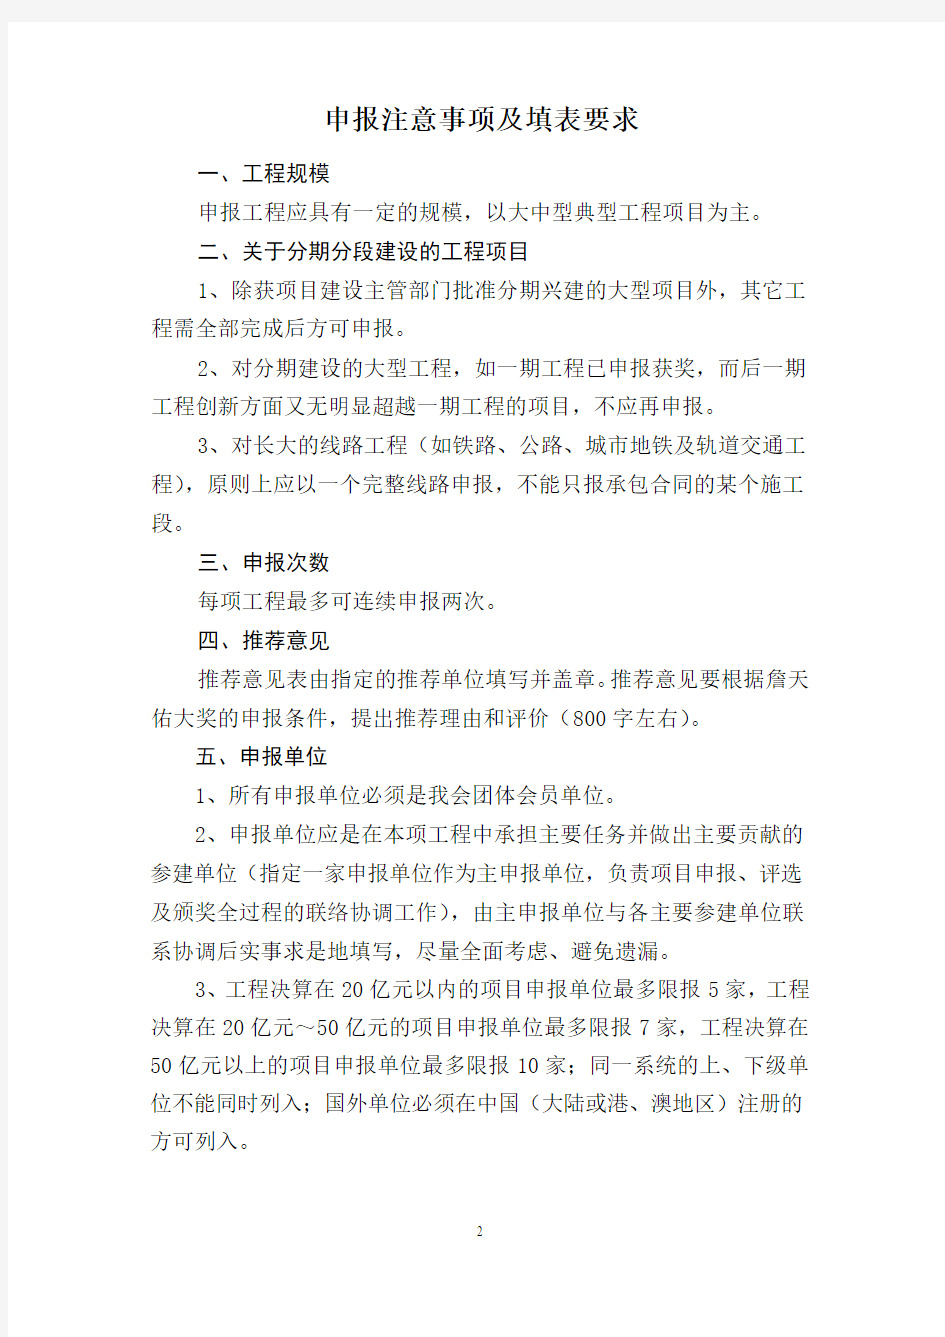 第十六届詹天佑奖参选工程推荐申报书及创新集体申报书